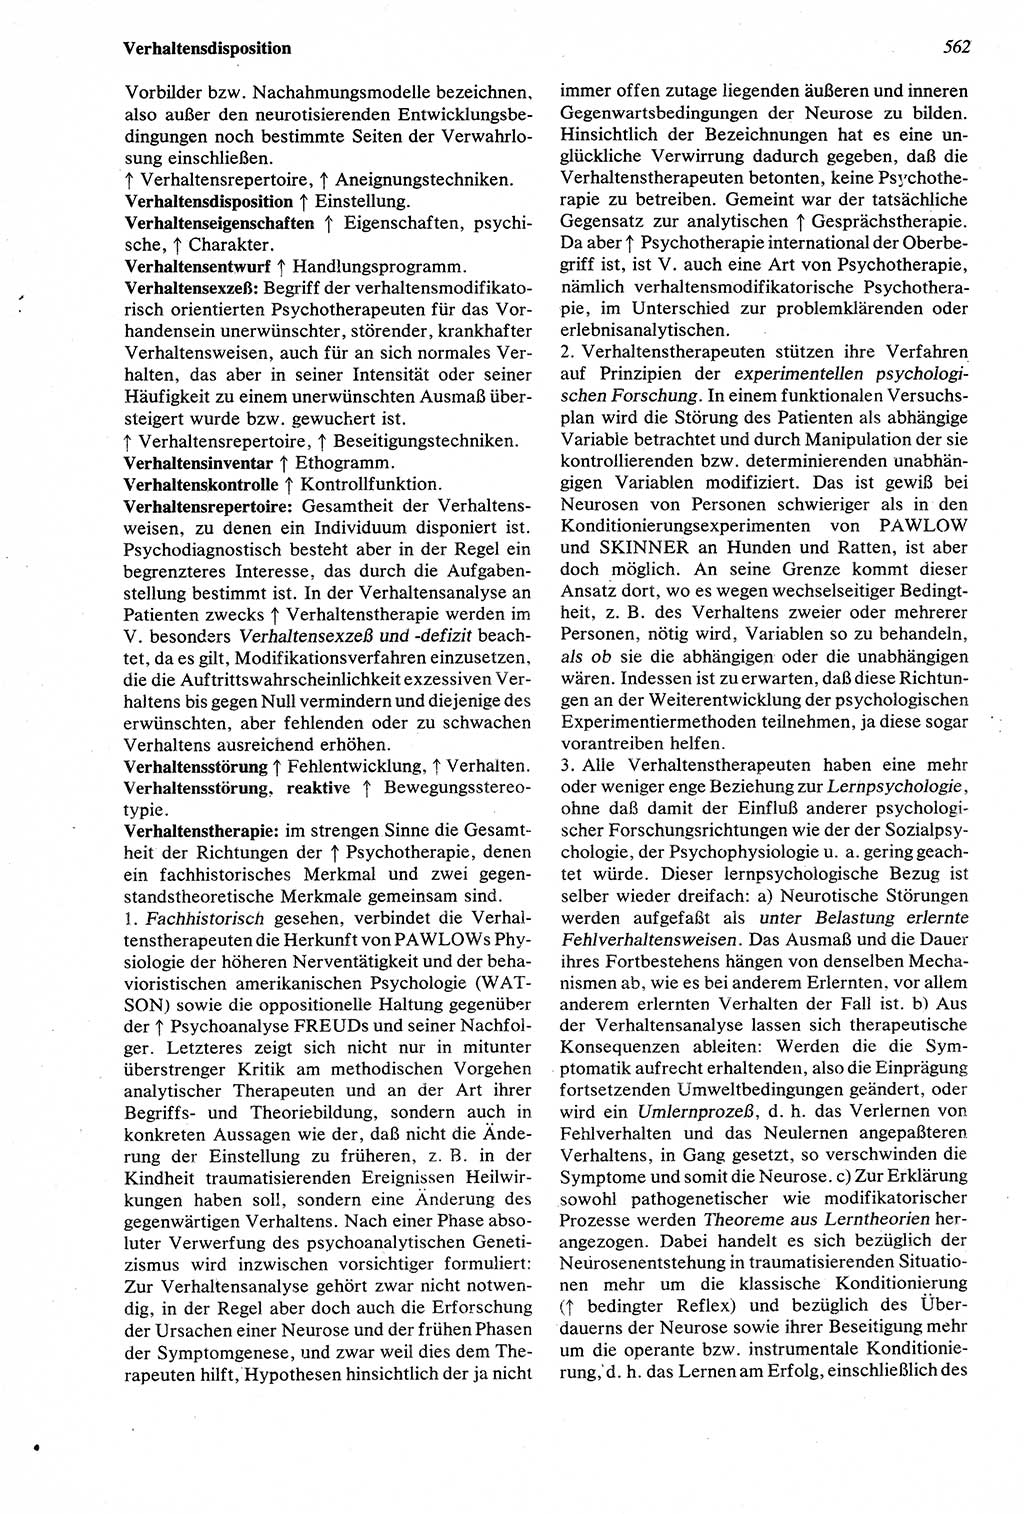 Wörterbuch der Psychologie [Deutsche Demokratische Republik (DDR)] 1976, Seite 562 (Wb. Psych. DDR 1976, S. 562)